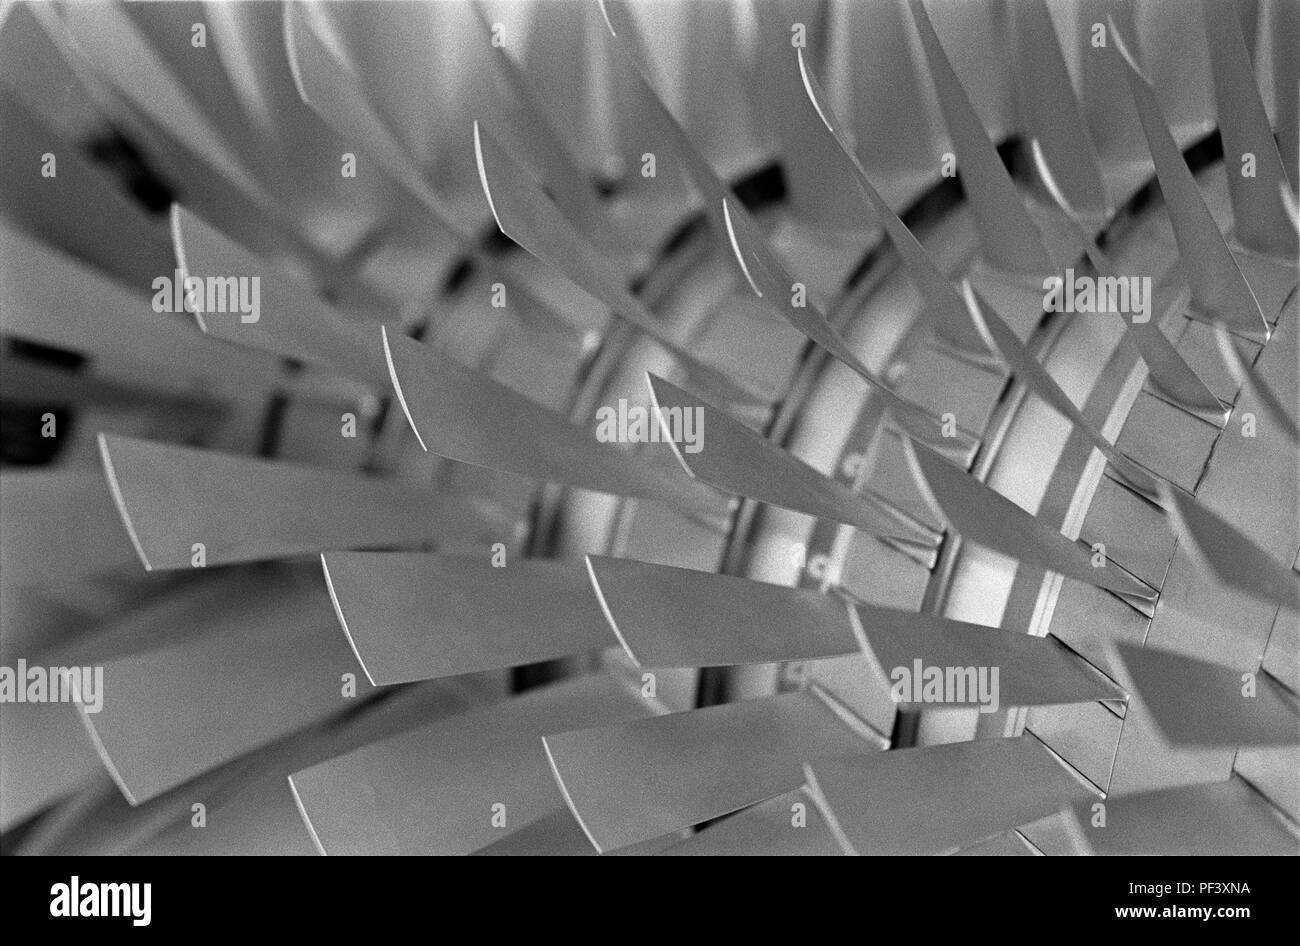 Turbojet compressor blades of J79 engine Stock Photo